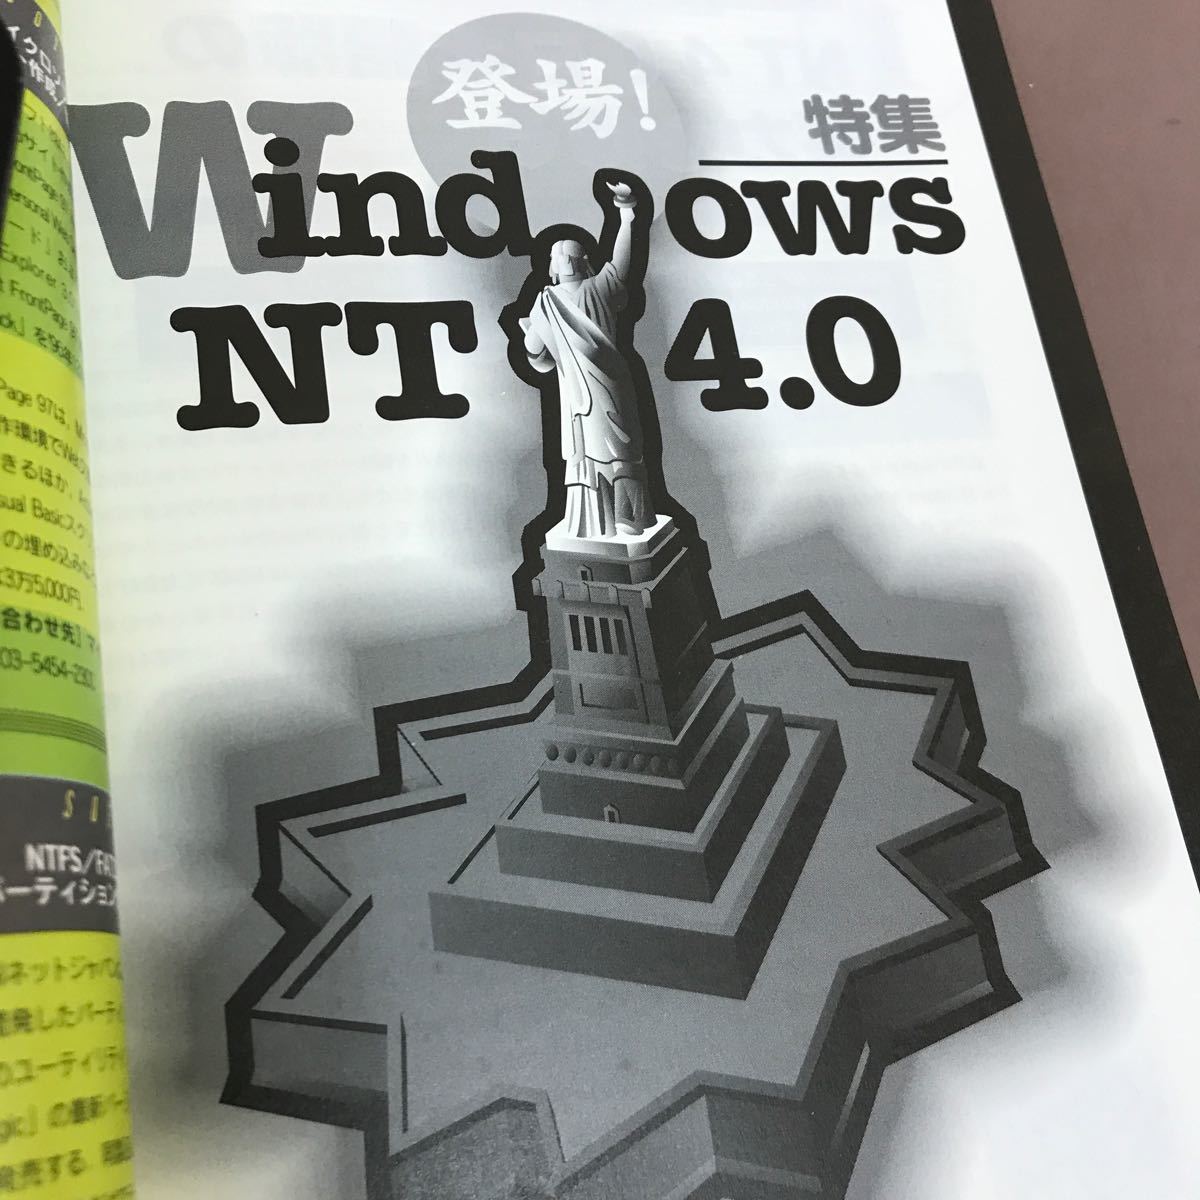 E52-008 программное обеспечение дизайн 1997.1 специальный выпуск появление!Windows NT4.0 технология критика фирма поломка есть 